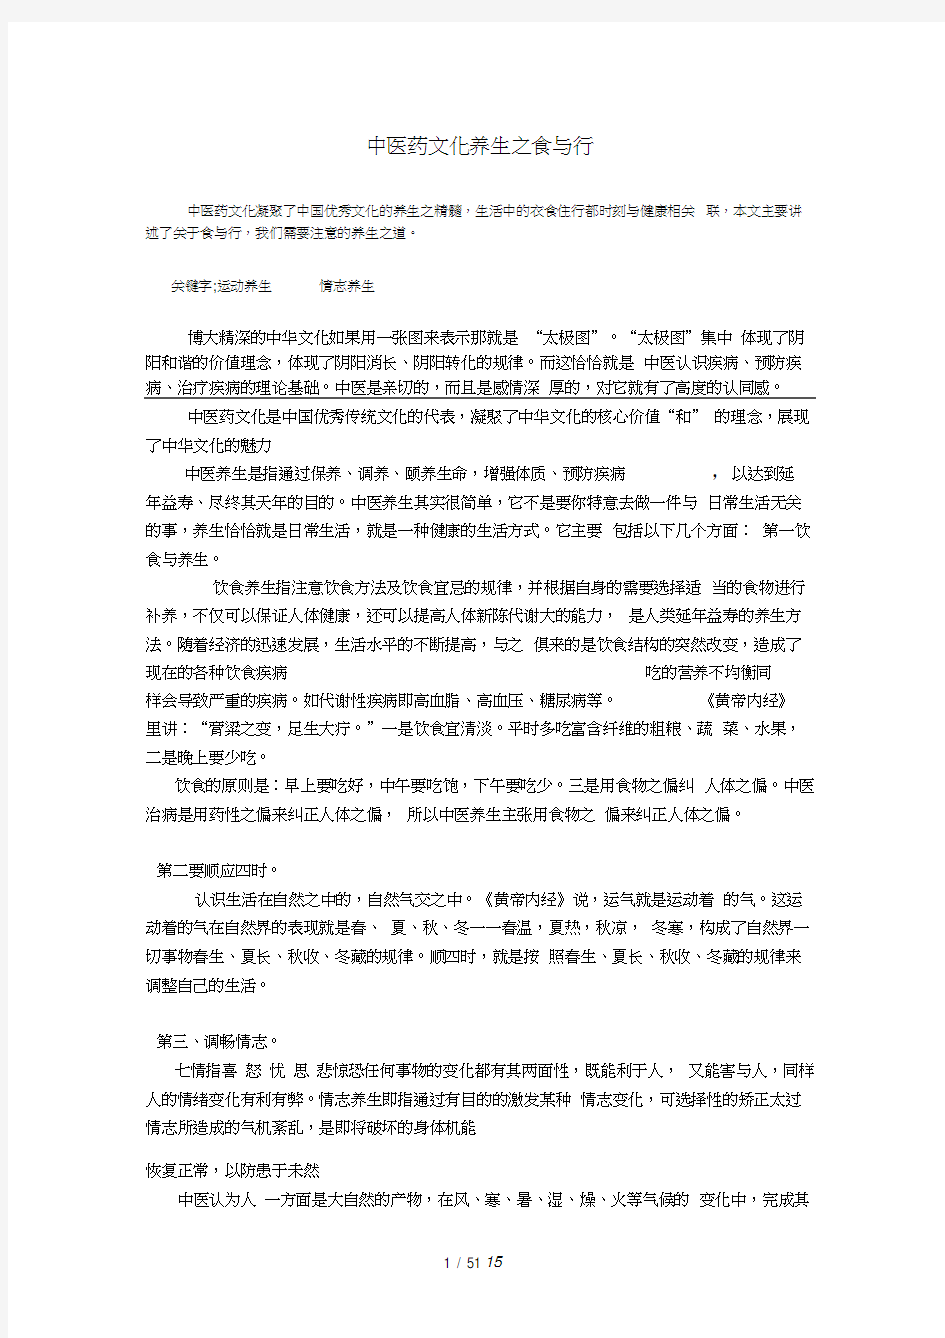 中医药文化与养生论文(20201101101000)